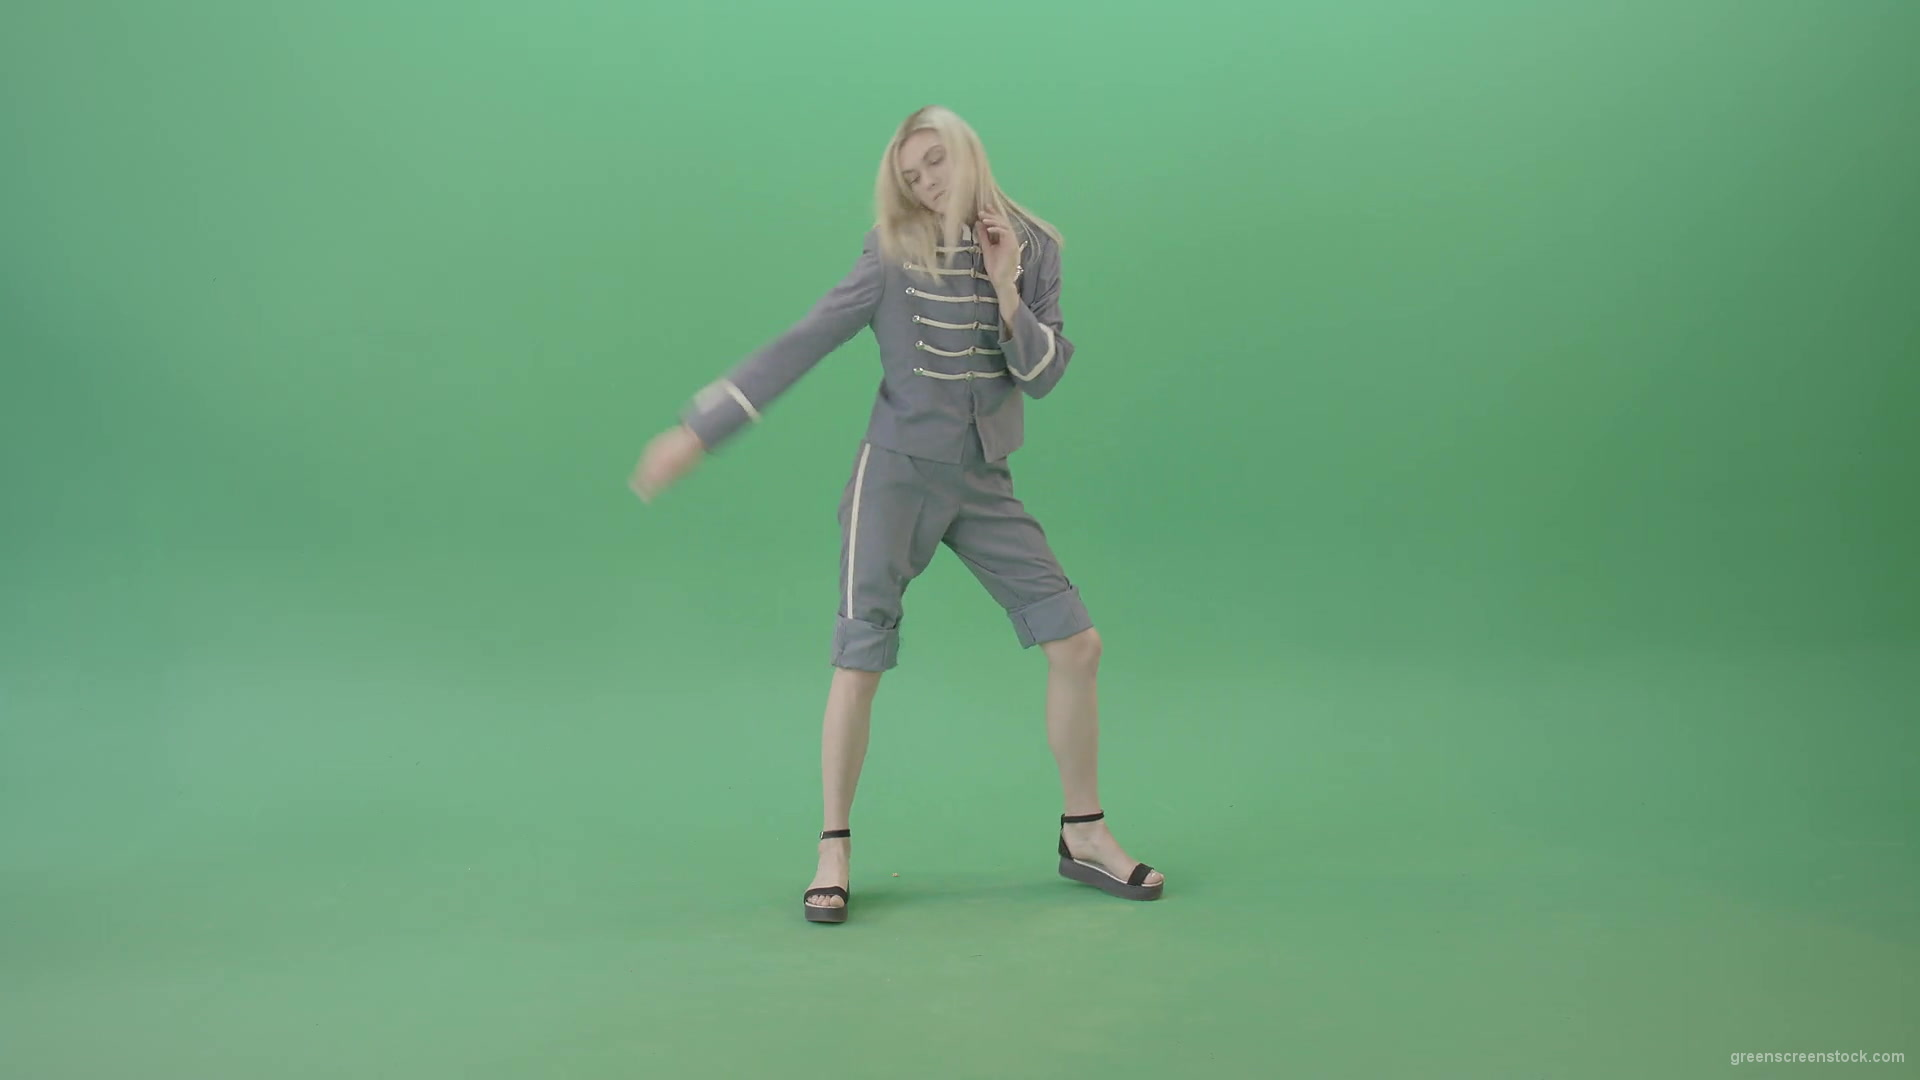 Techno-rave-blonde-girl-dancing-house-chill-isolated-on-green-screen-4K-Video-Footage-1920_009 Green Screen Stock